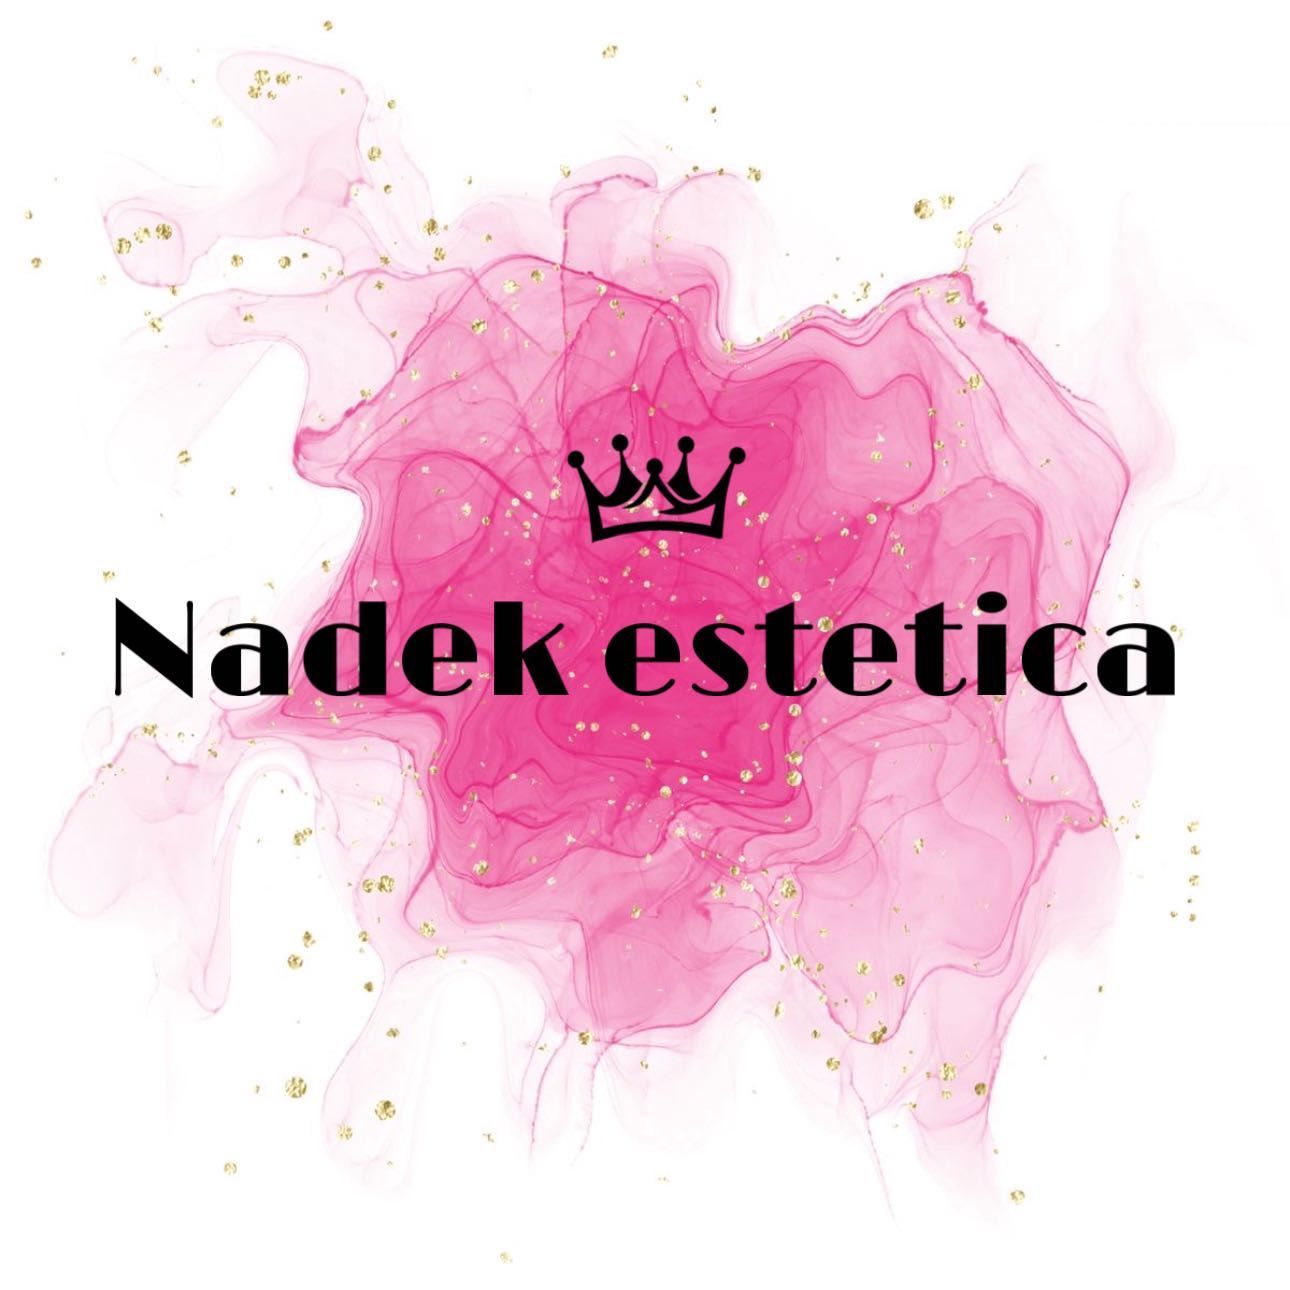 Nadek.estetica Encuentranos En Nadek Barber, Avenida Trabajadores Inmigrantes, n3 local derecha, 41009, Sevilla